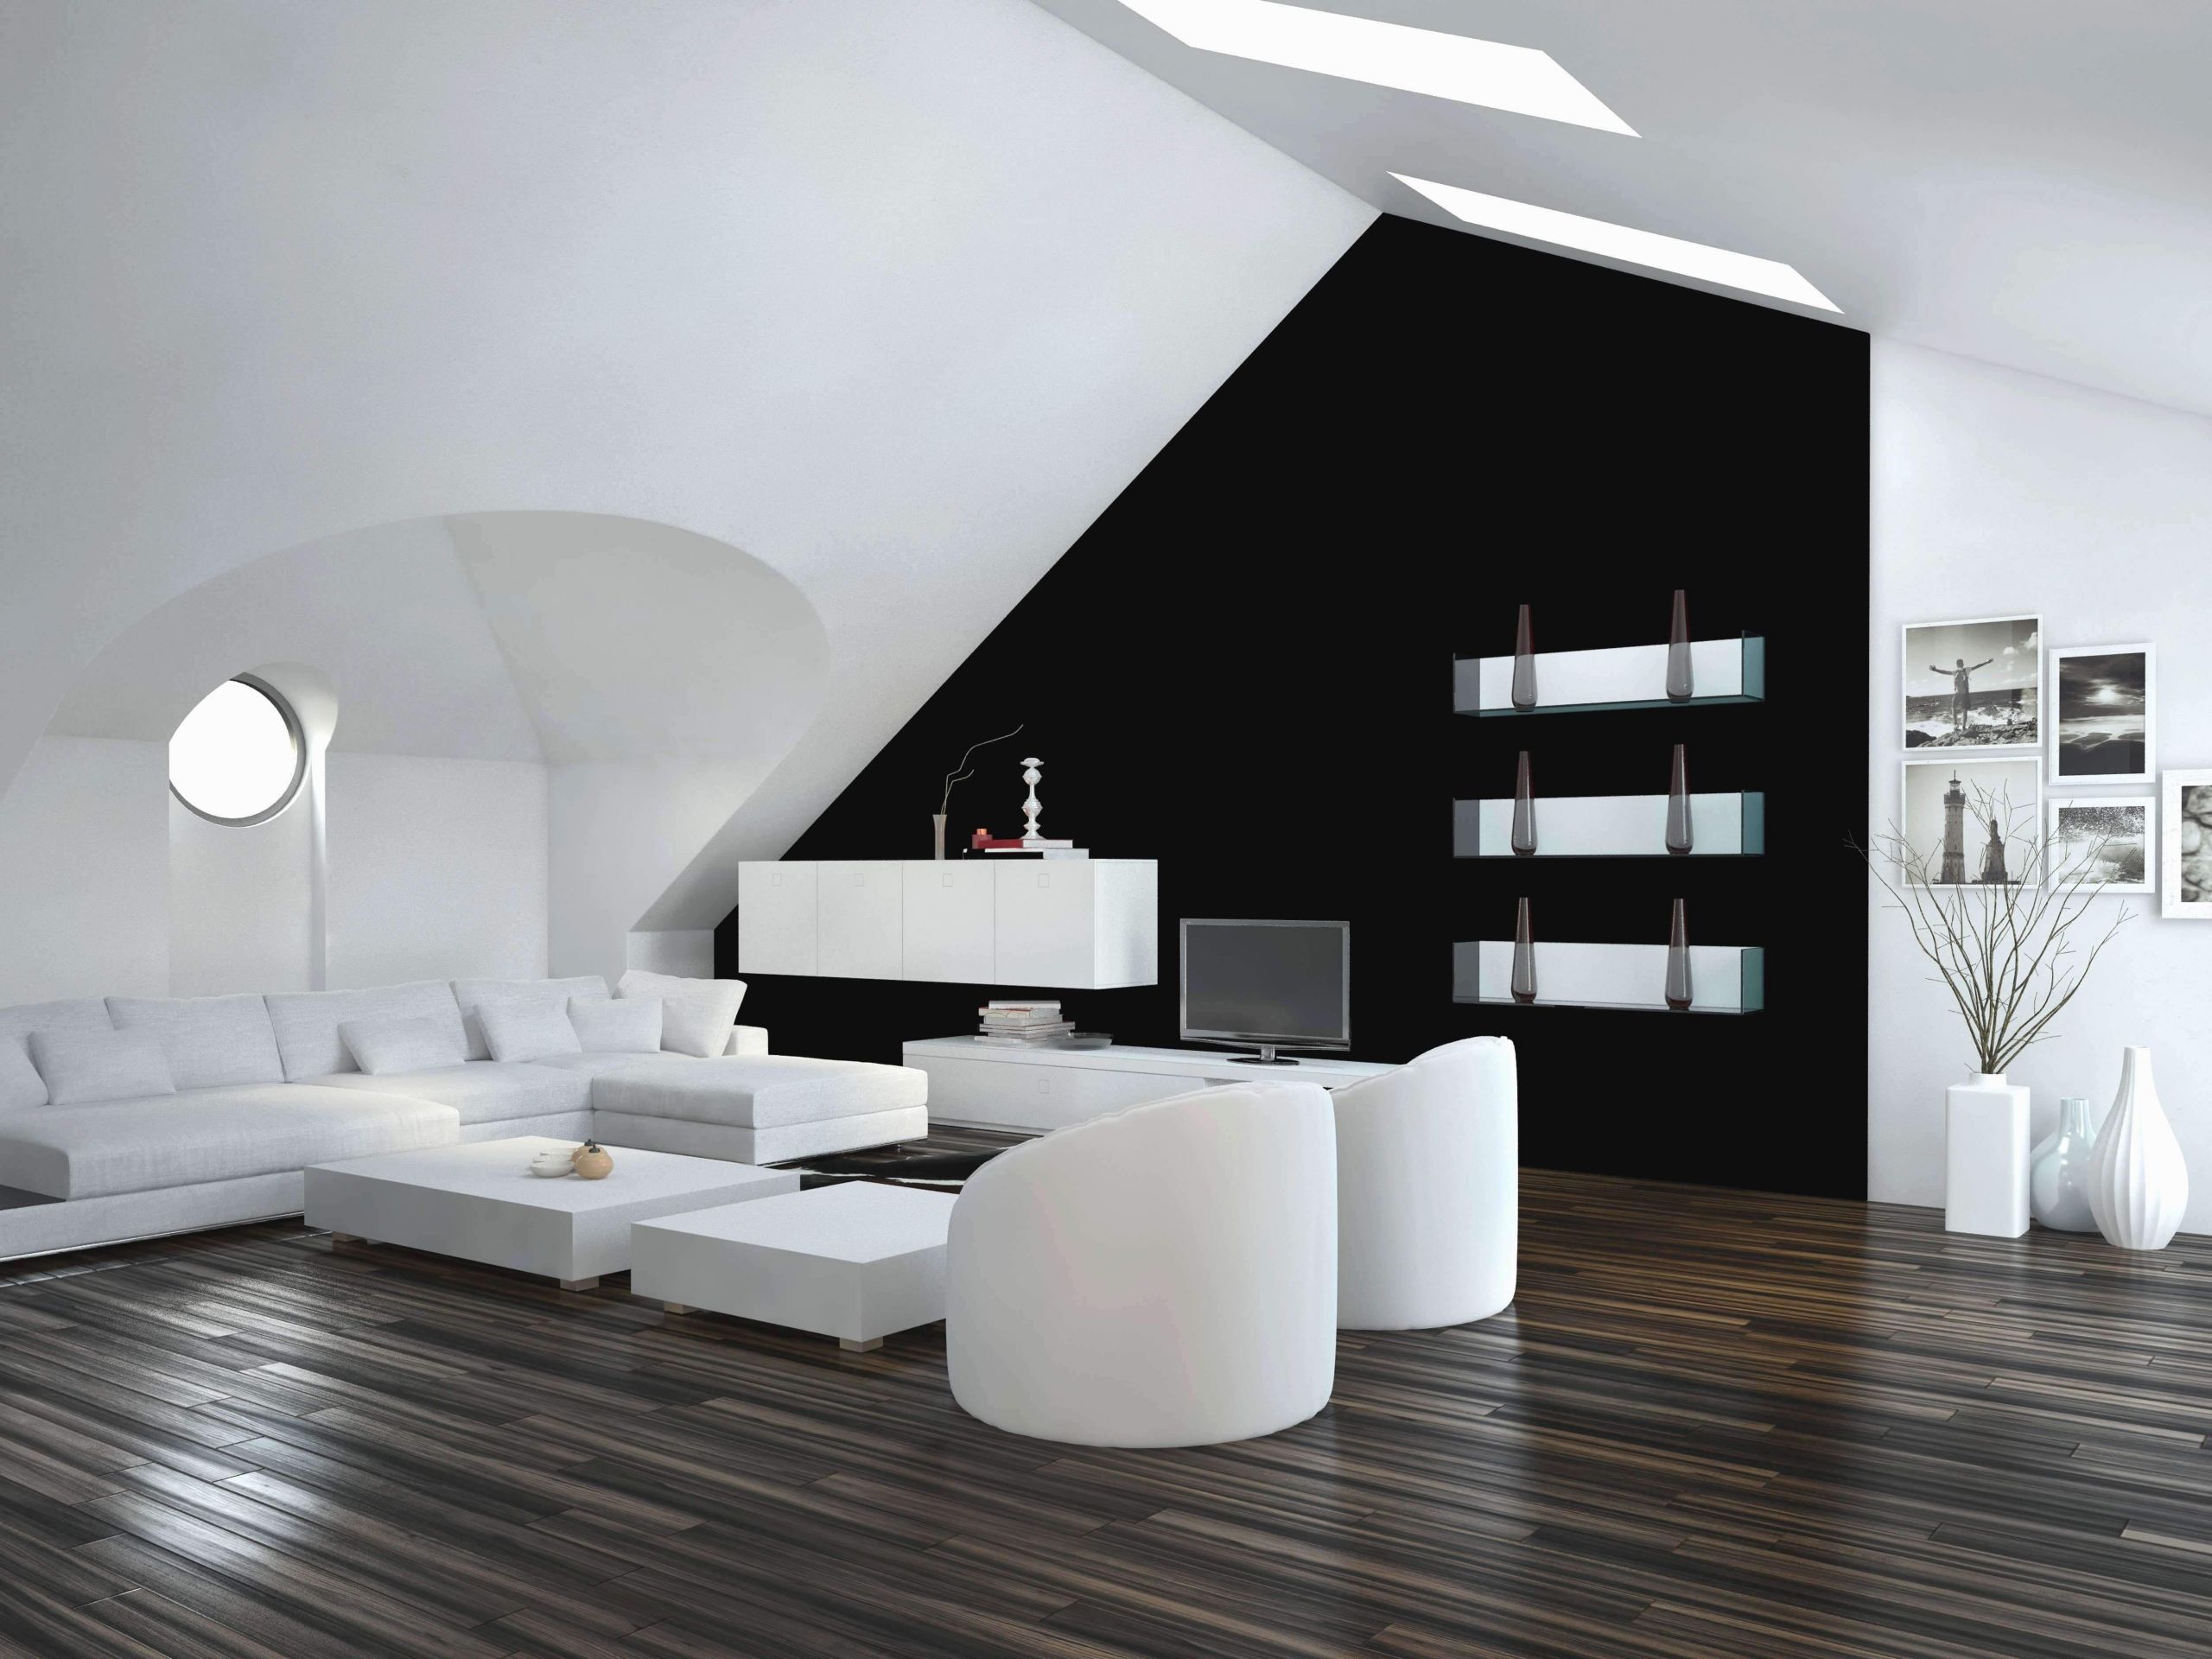 Deko Online Bestellen Elegant Wohnzimmer Deko Line Shop Reizend Einzigartig Dekoration